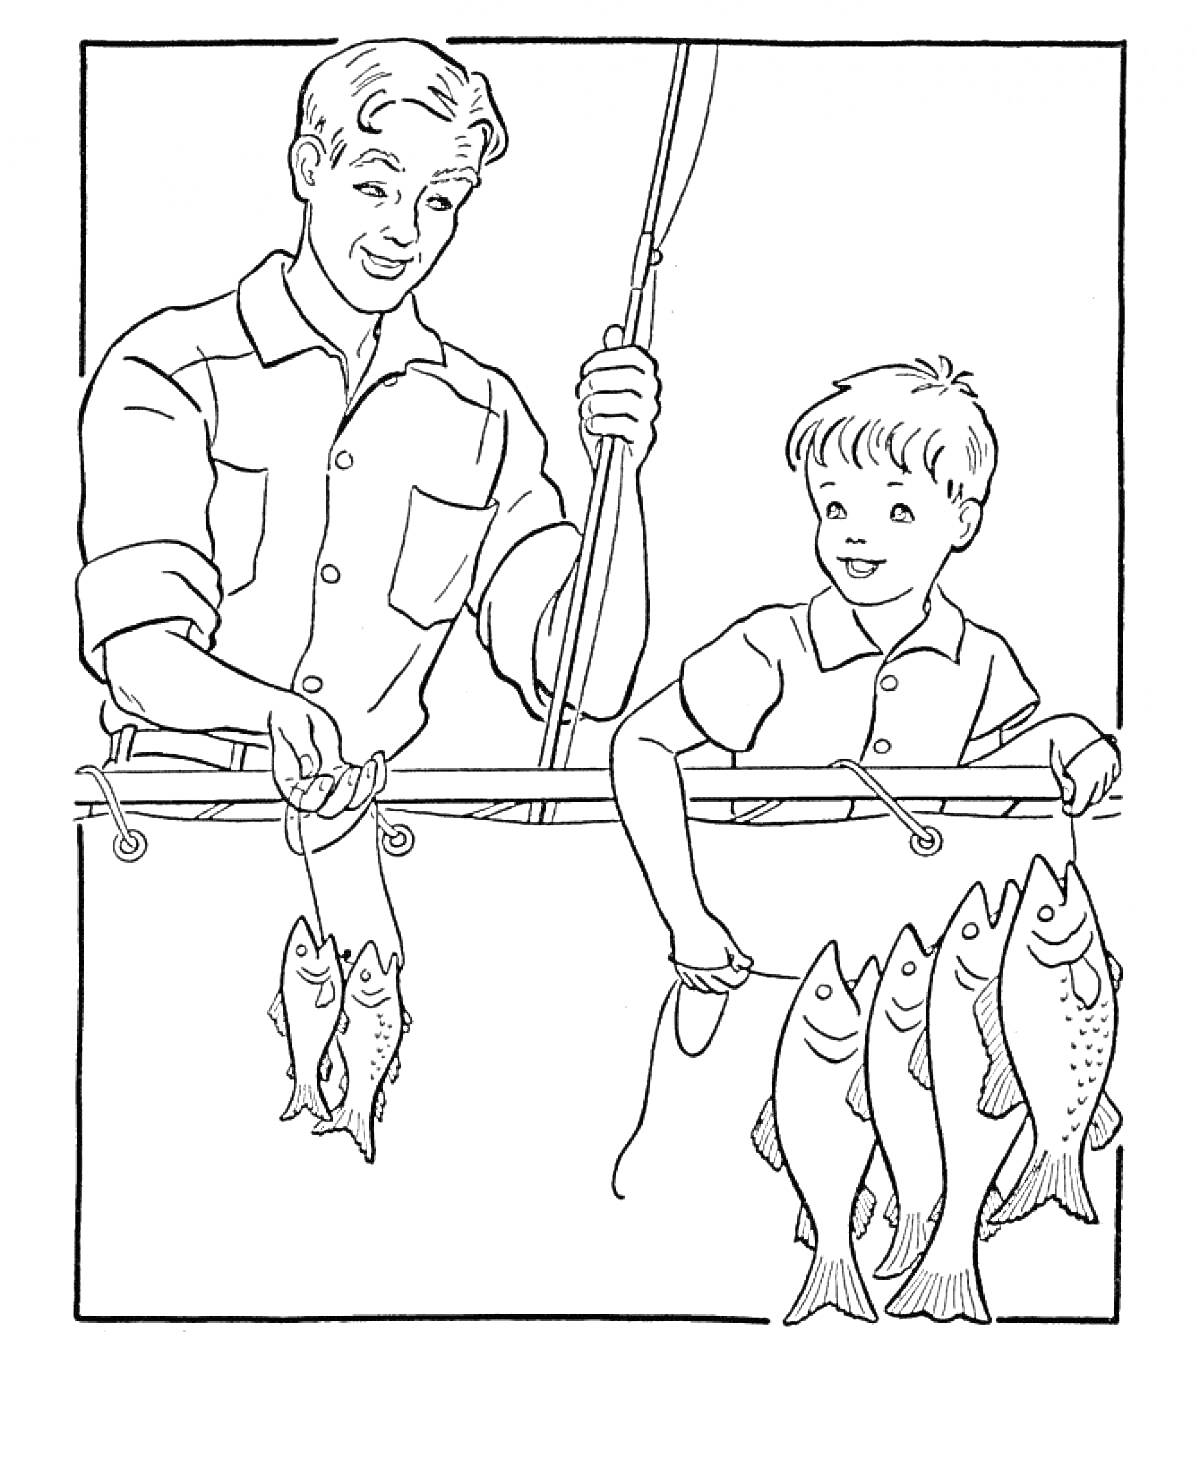 Раскраска Папа с сыном ловят рыбу на удочку, держат улов в руках